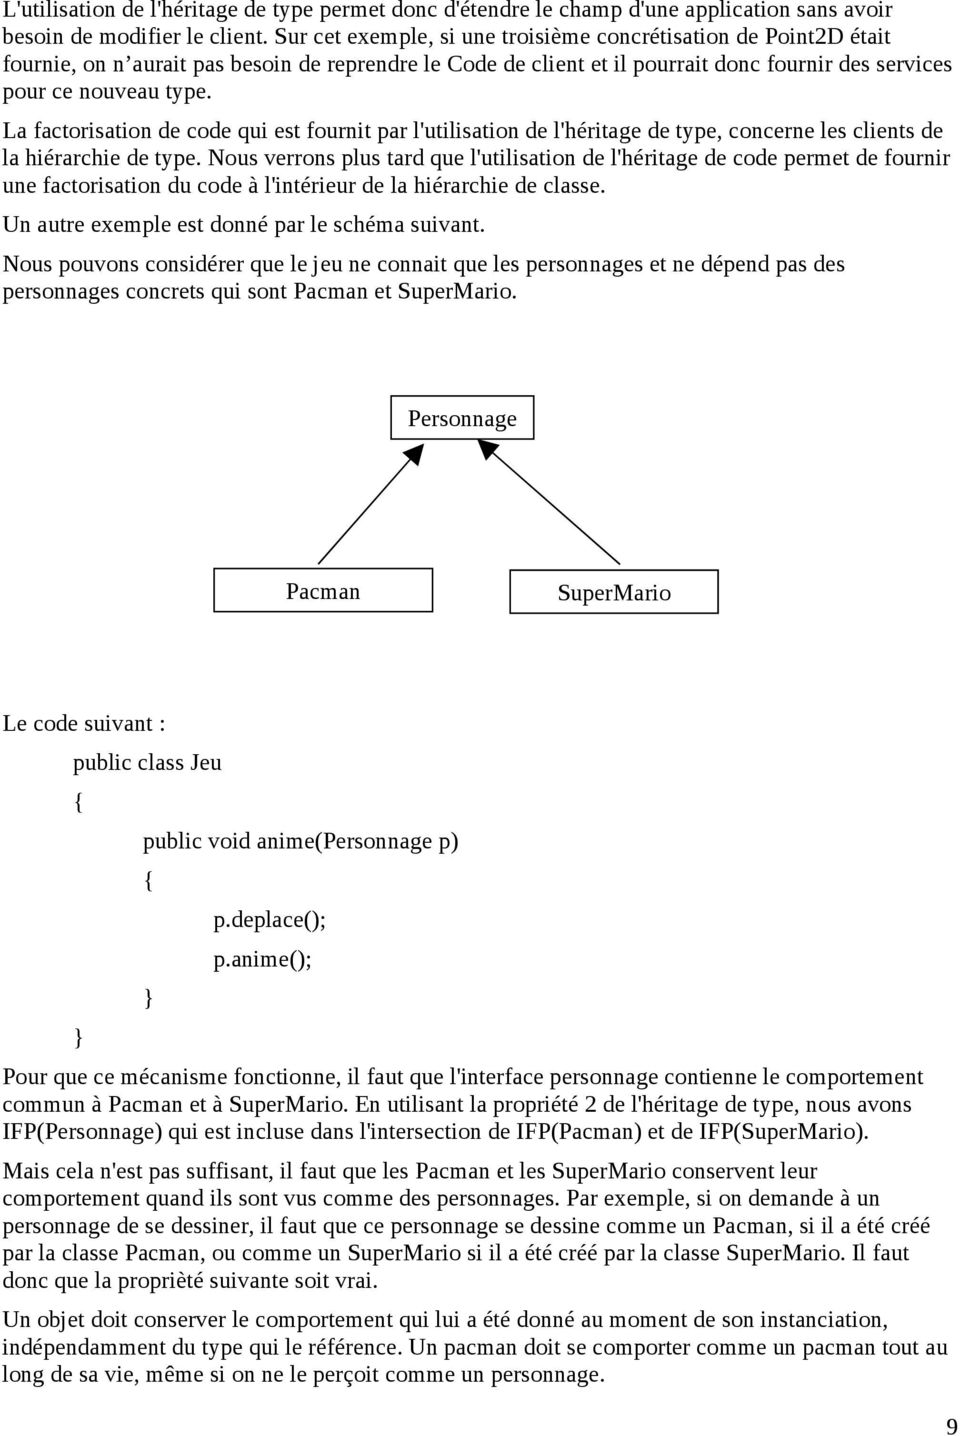 La factorisation de code qui est fournit par l'utilisation de l'héritage de type, concerne les clients de la hiérarchie de type.